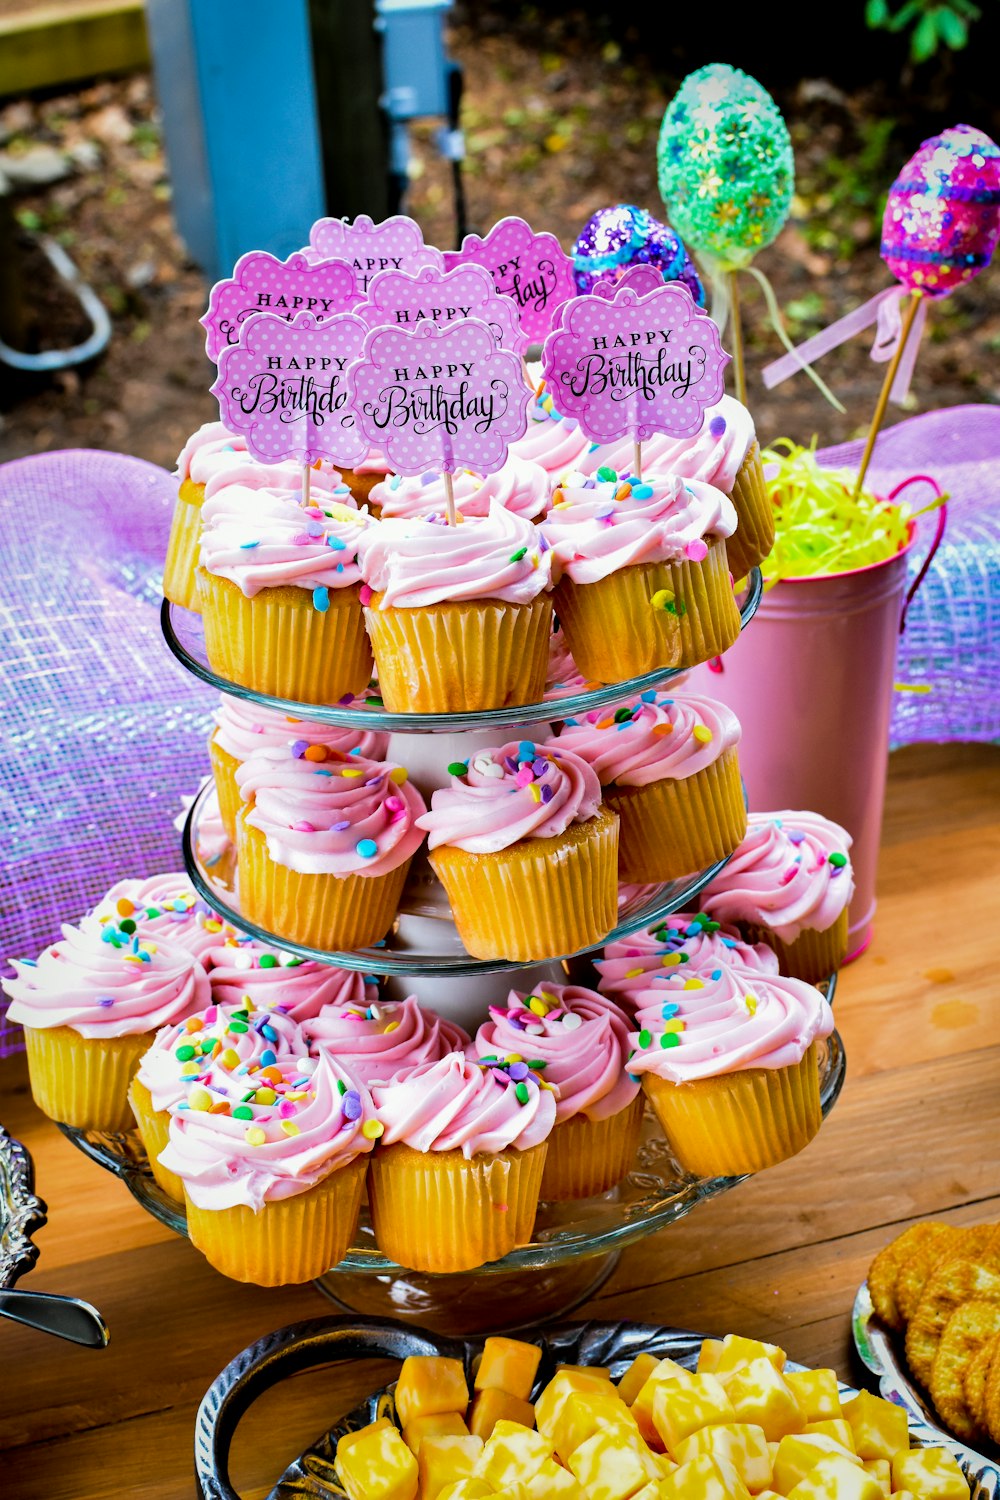 un tavolo sormontato da un sacco di cupcakes ricoperti di glassa rosa